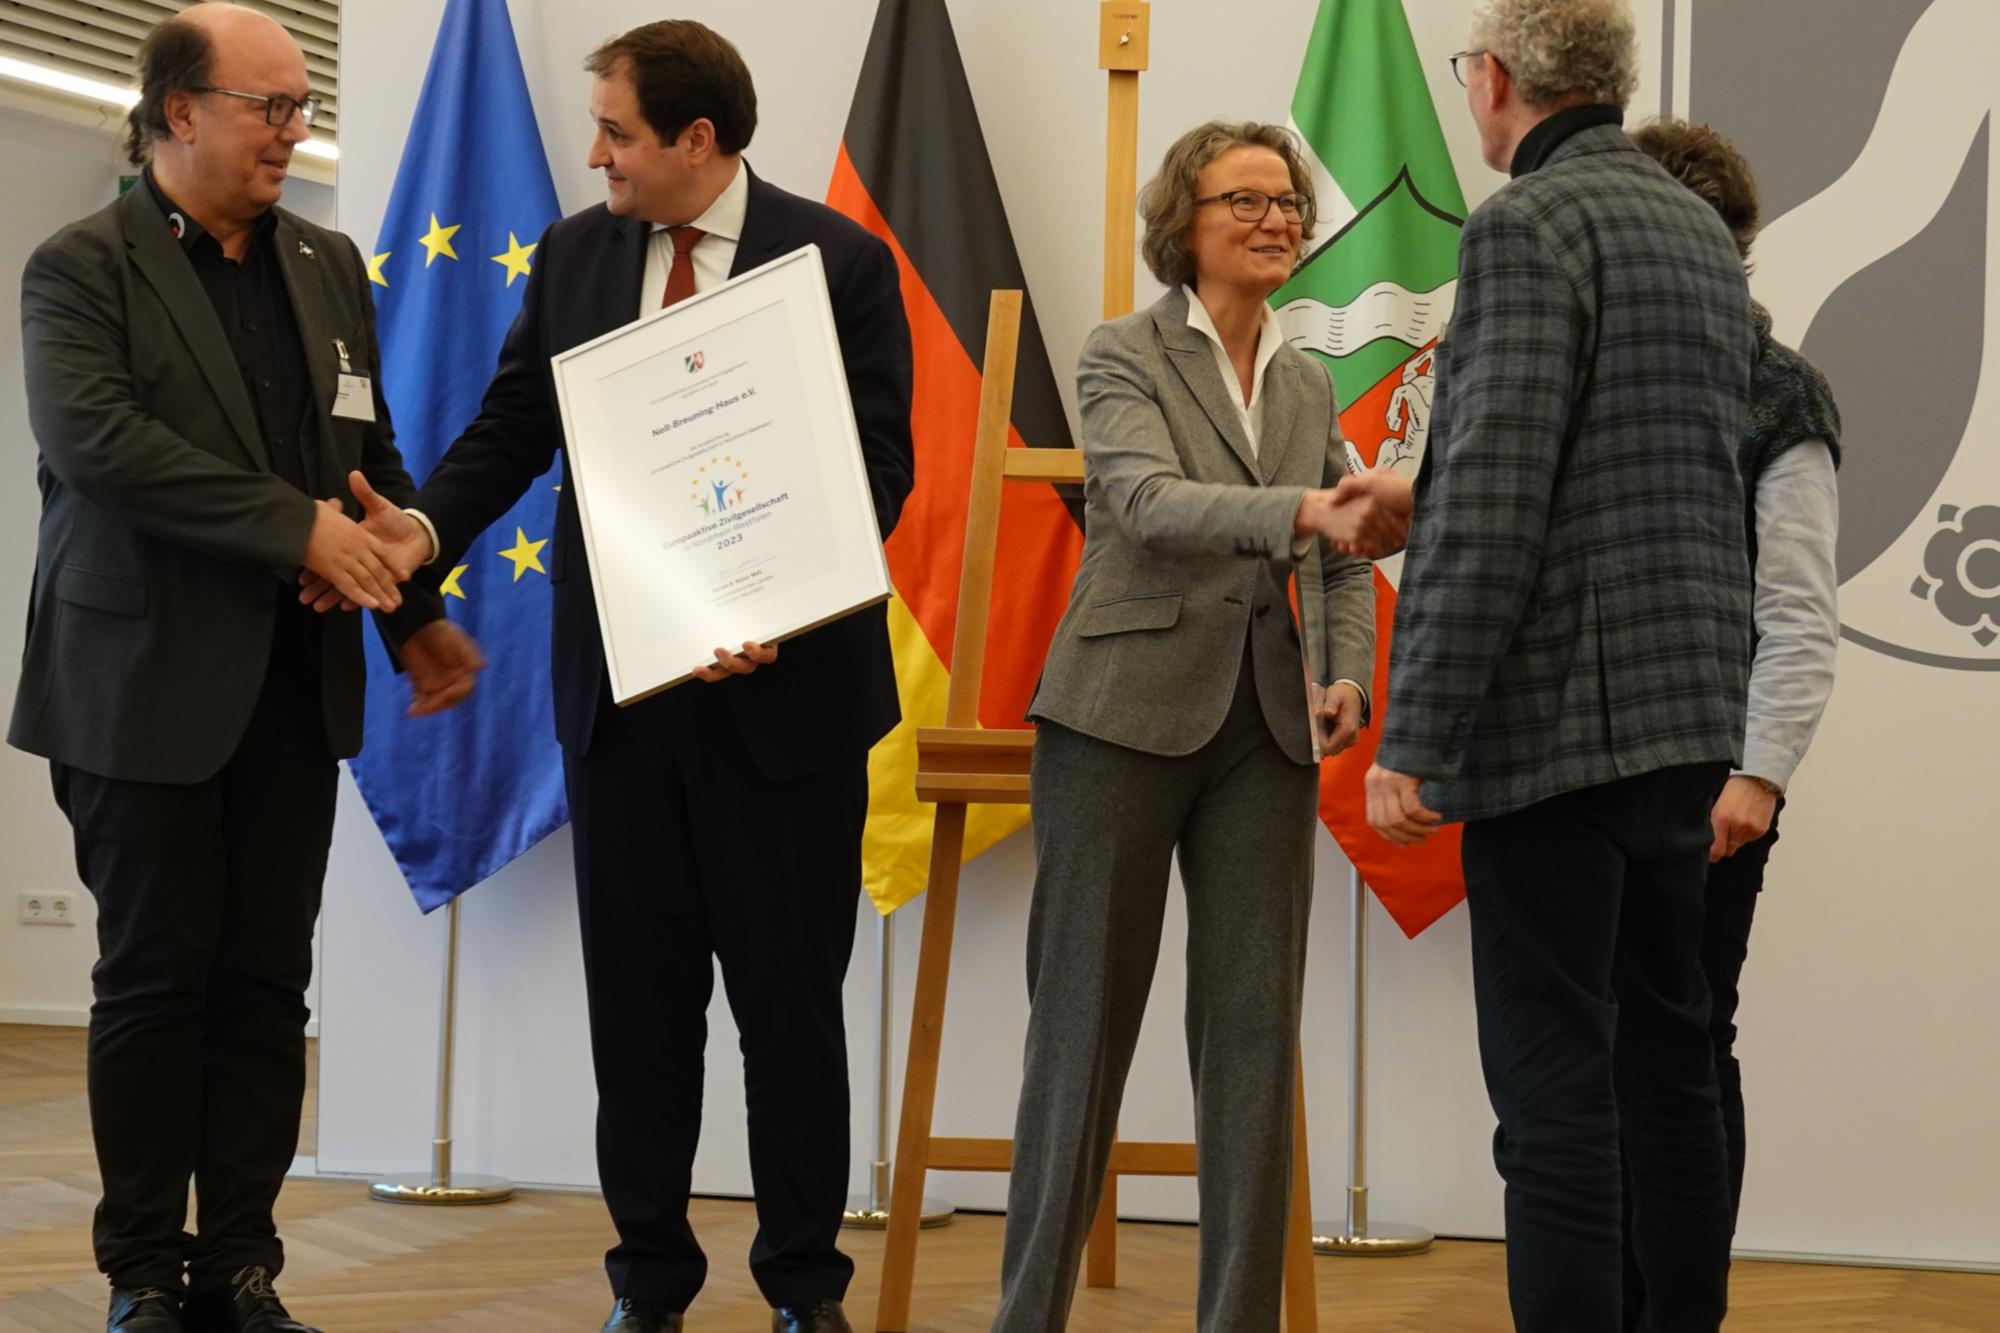 Der Moment der Auszeichnung: Europaminister Nathanael Liminski und Kommunalministerin Ina Scharrenbach gratulierten und überreichten die Urkunde.